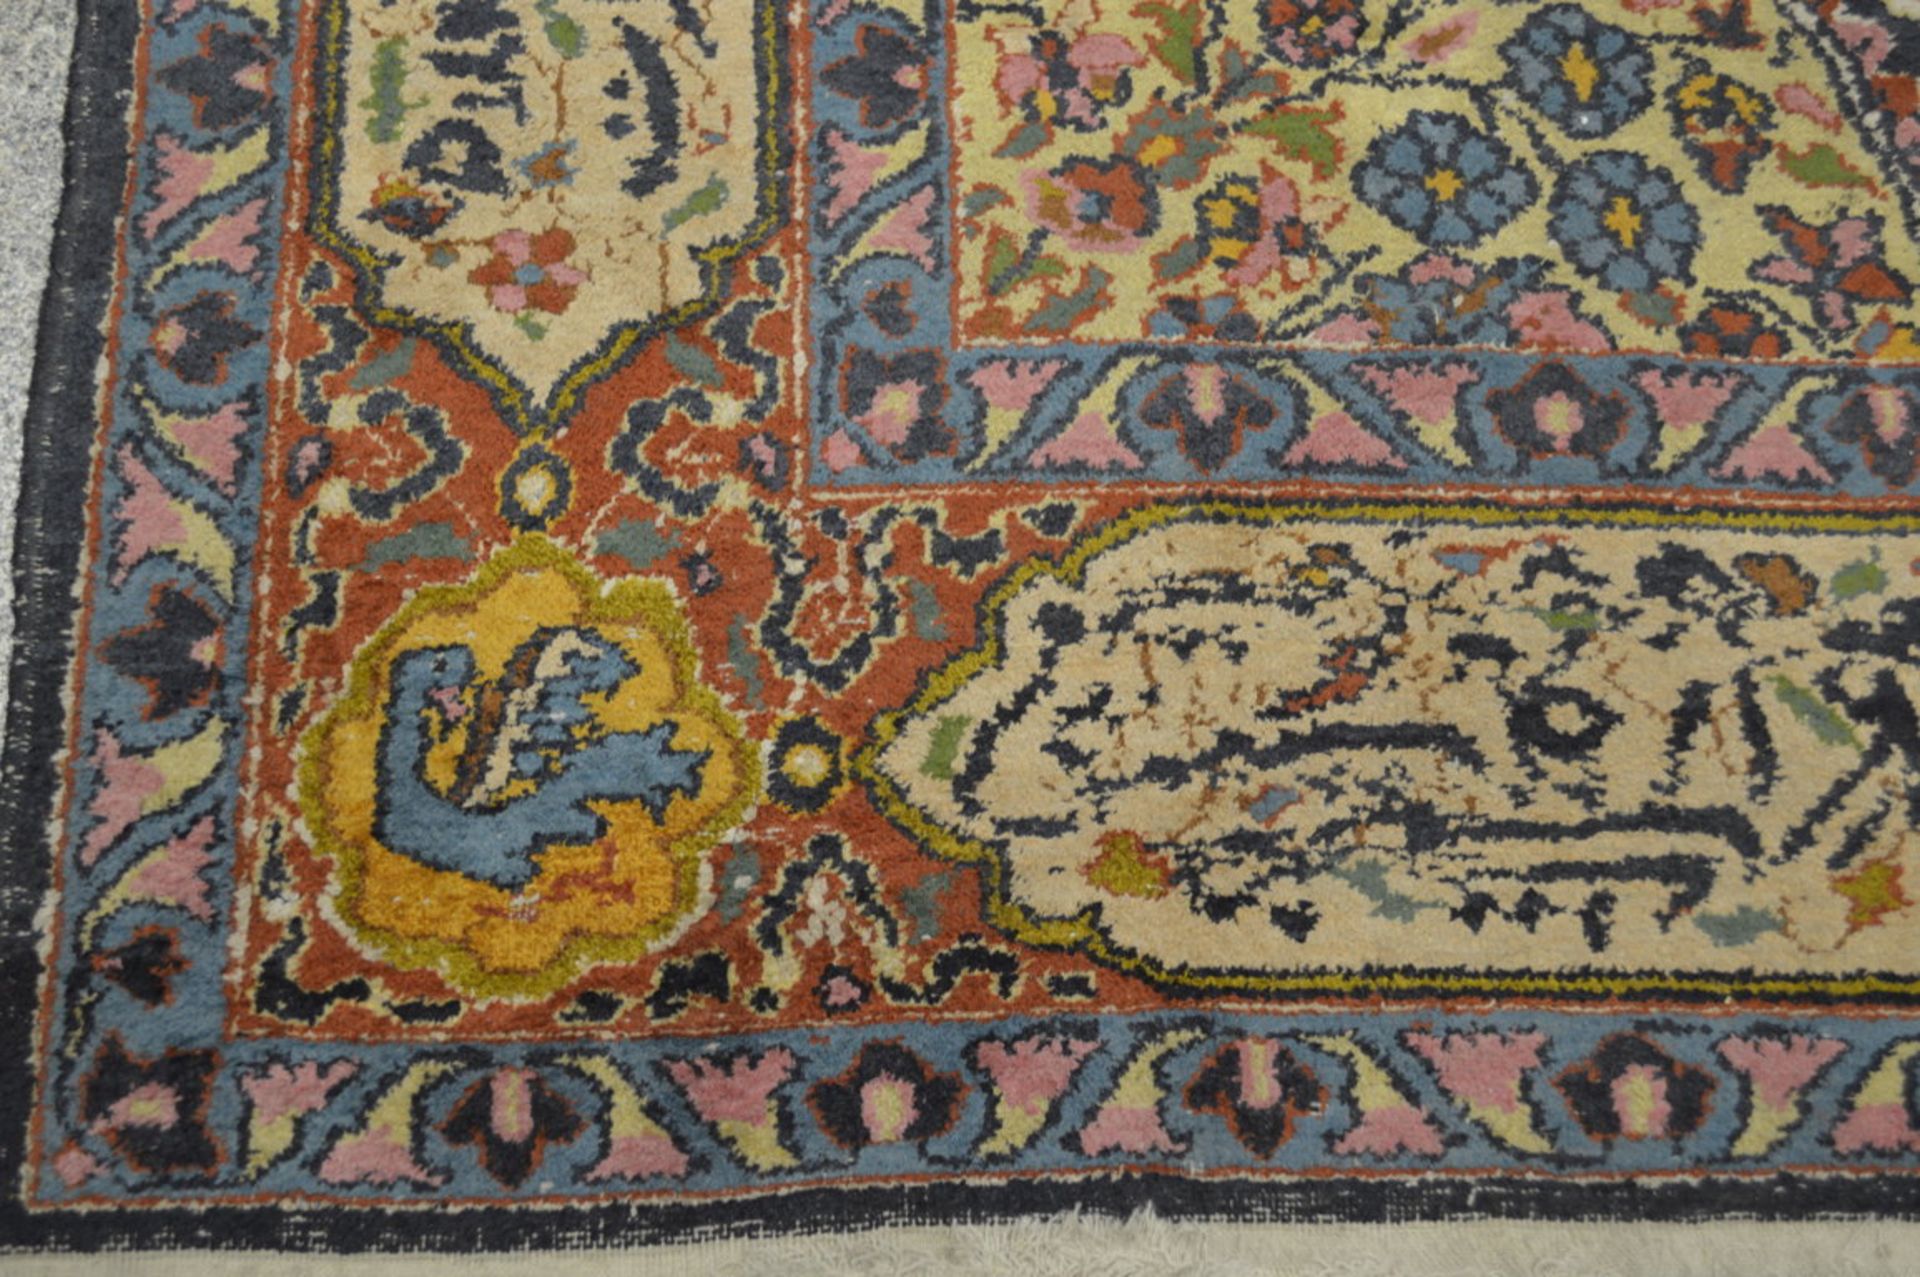 Teppich (wohl arabische Länder, Alter unbekannt) - Bild 5 aus 8